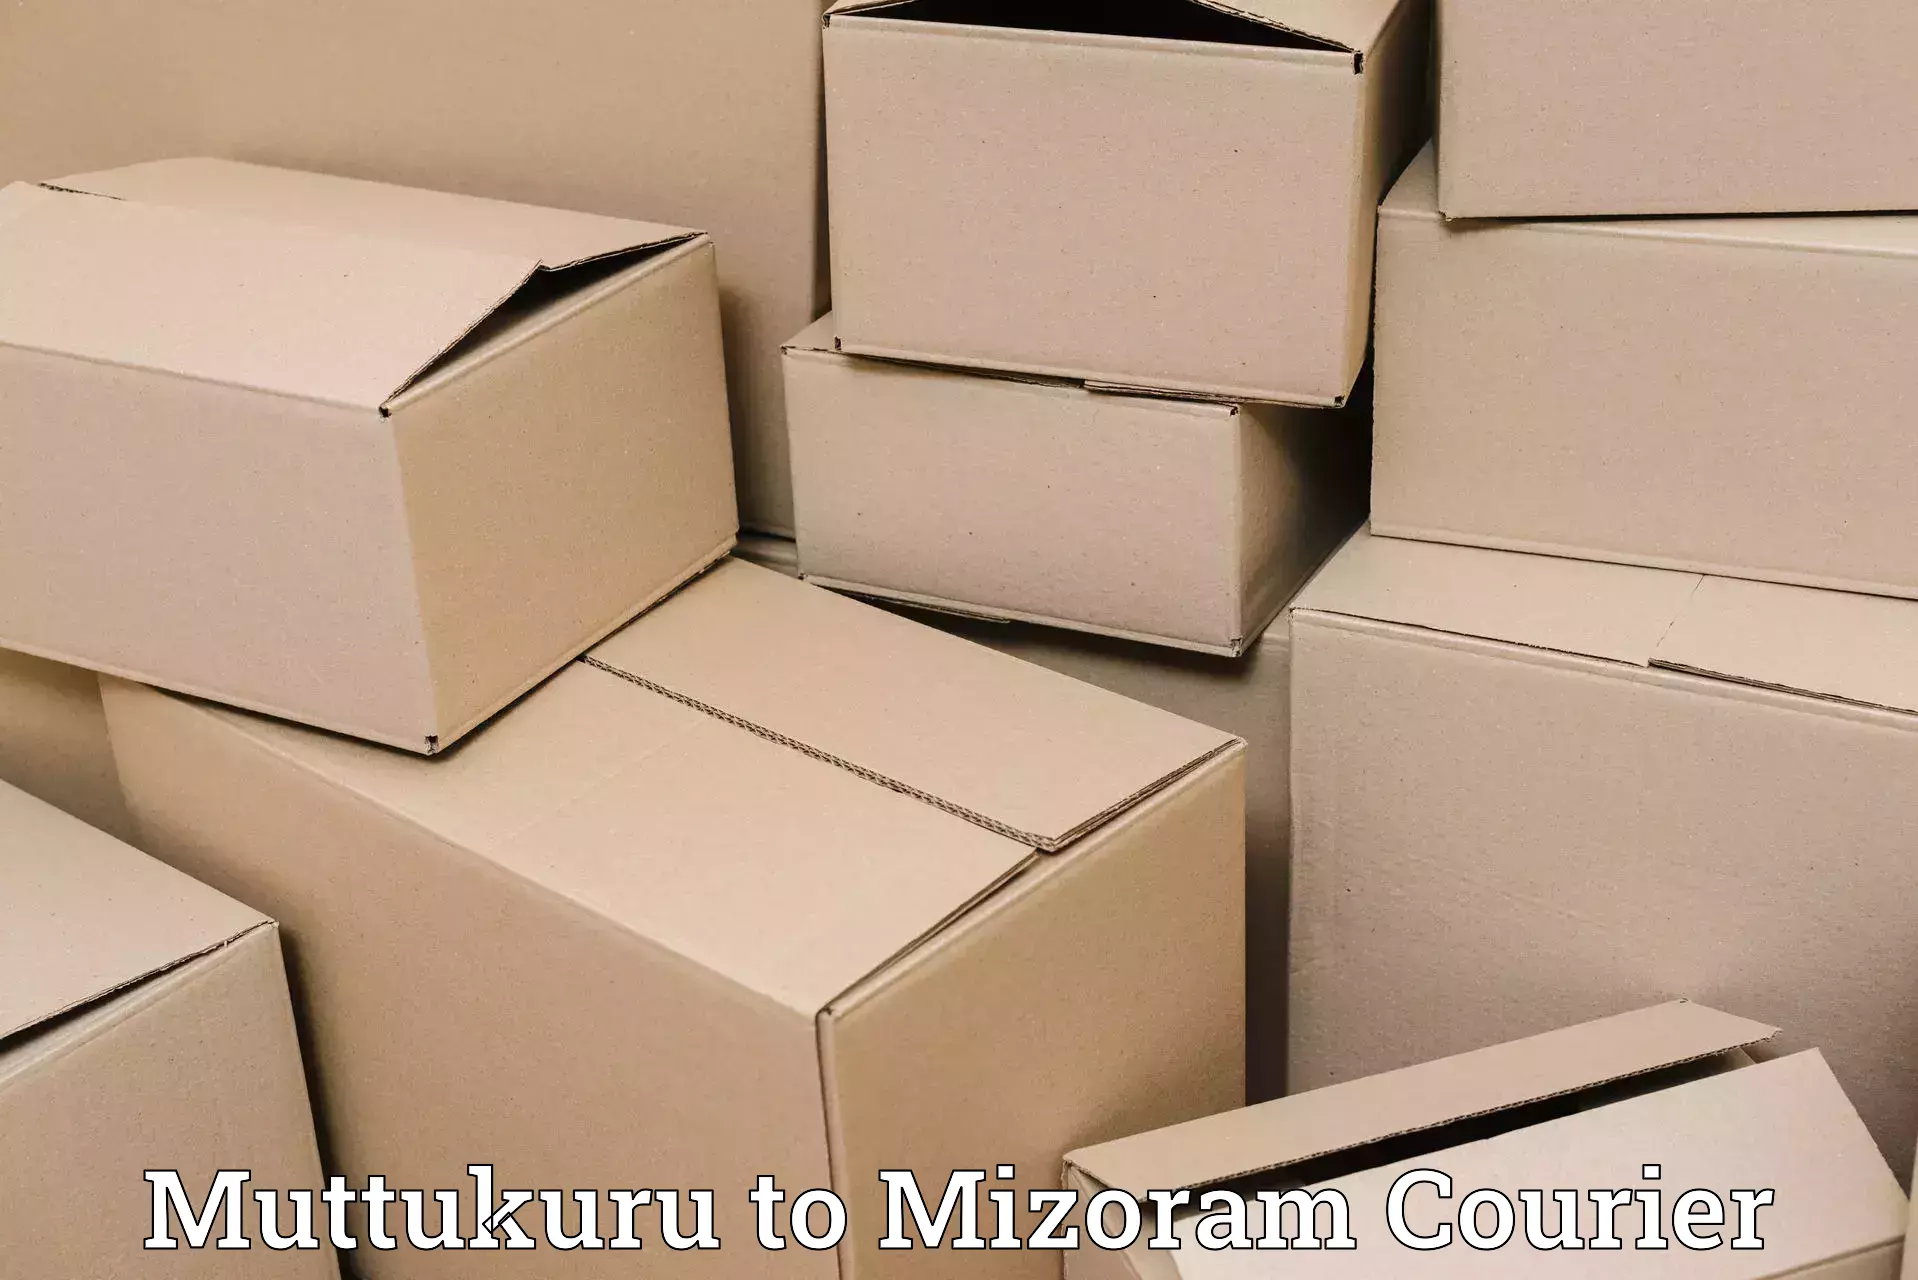 24/7 courier service in Muttukuru to Khawzawl